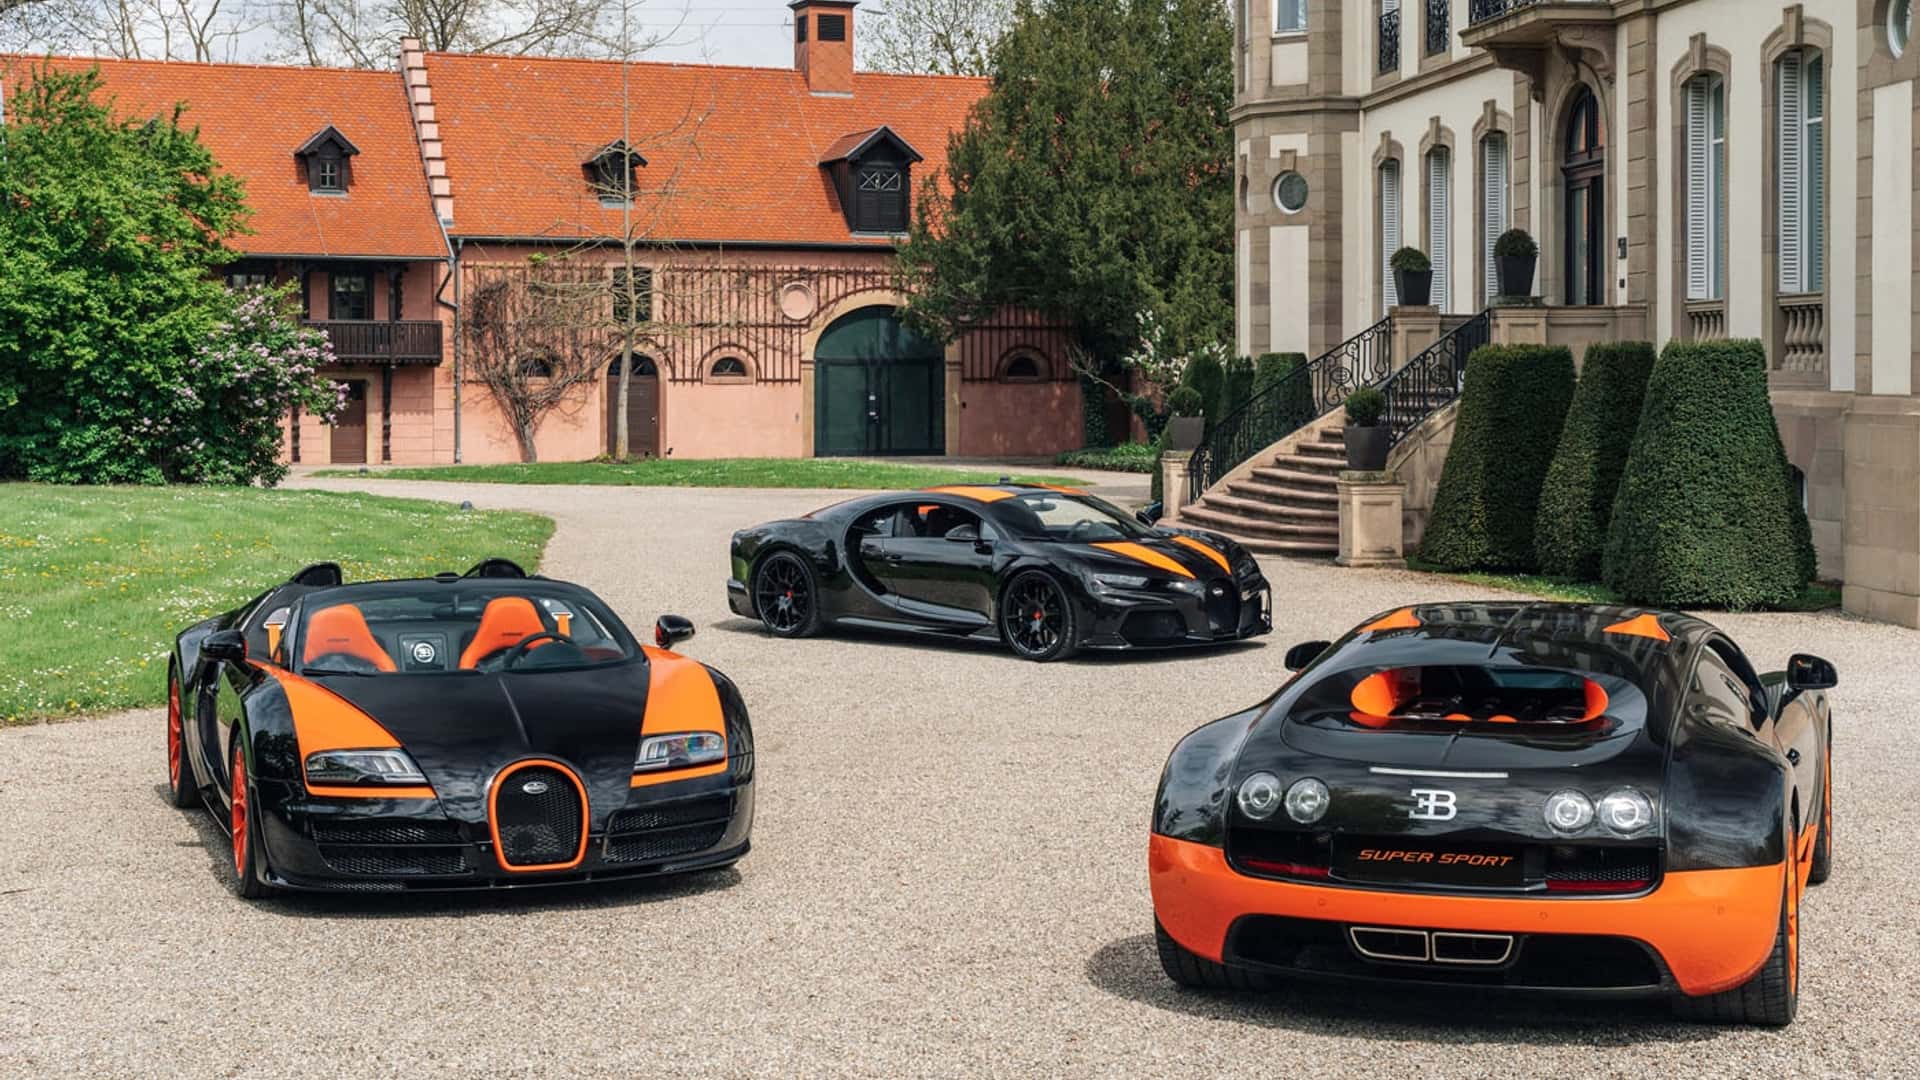 Chủ xe Bugatti mang bộ sưu tập 'kỷ lục' tới tổng hành dinh hãng dạo chơi - Ảnh 3.